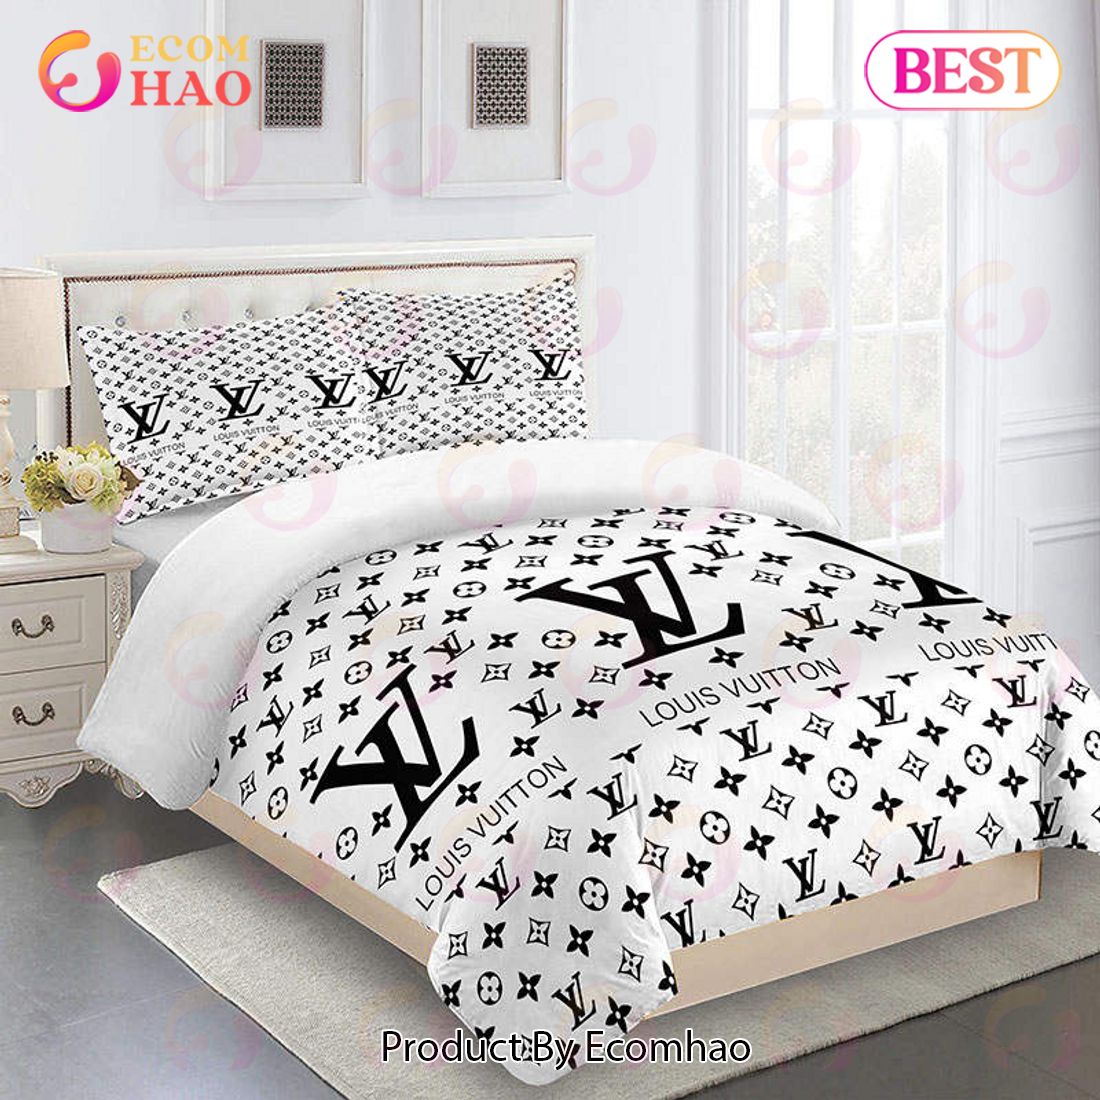 Black Mickey Mouse Louis Vuitton Bedding Sets Bed Sets, Bedroom Sets, Comforter  Sets, Duvet Cover, Bedspread